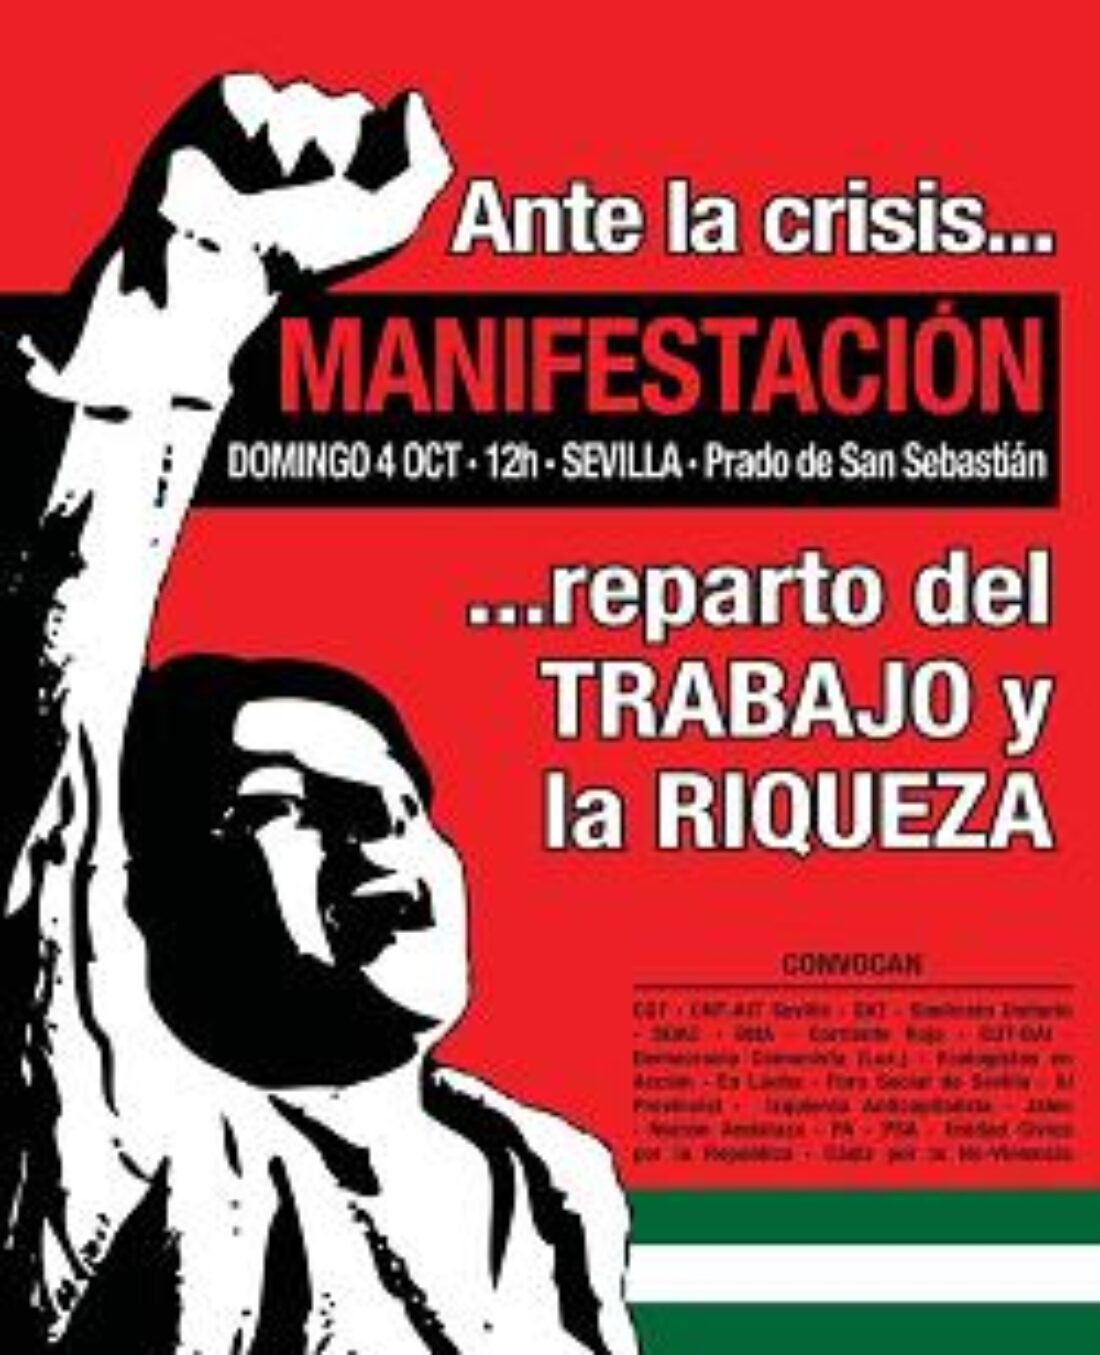 4 de octubre, Sevilla : Manifestación unitaria «Ante la Crisis… reparto del trabajo y la riqueza»